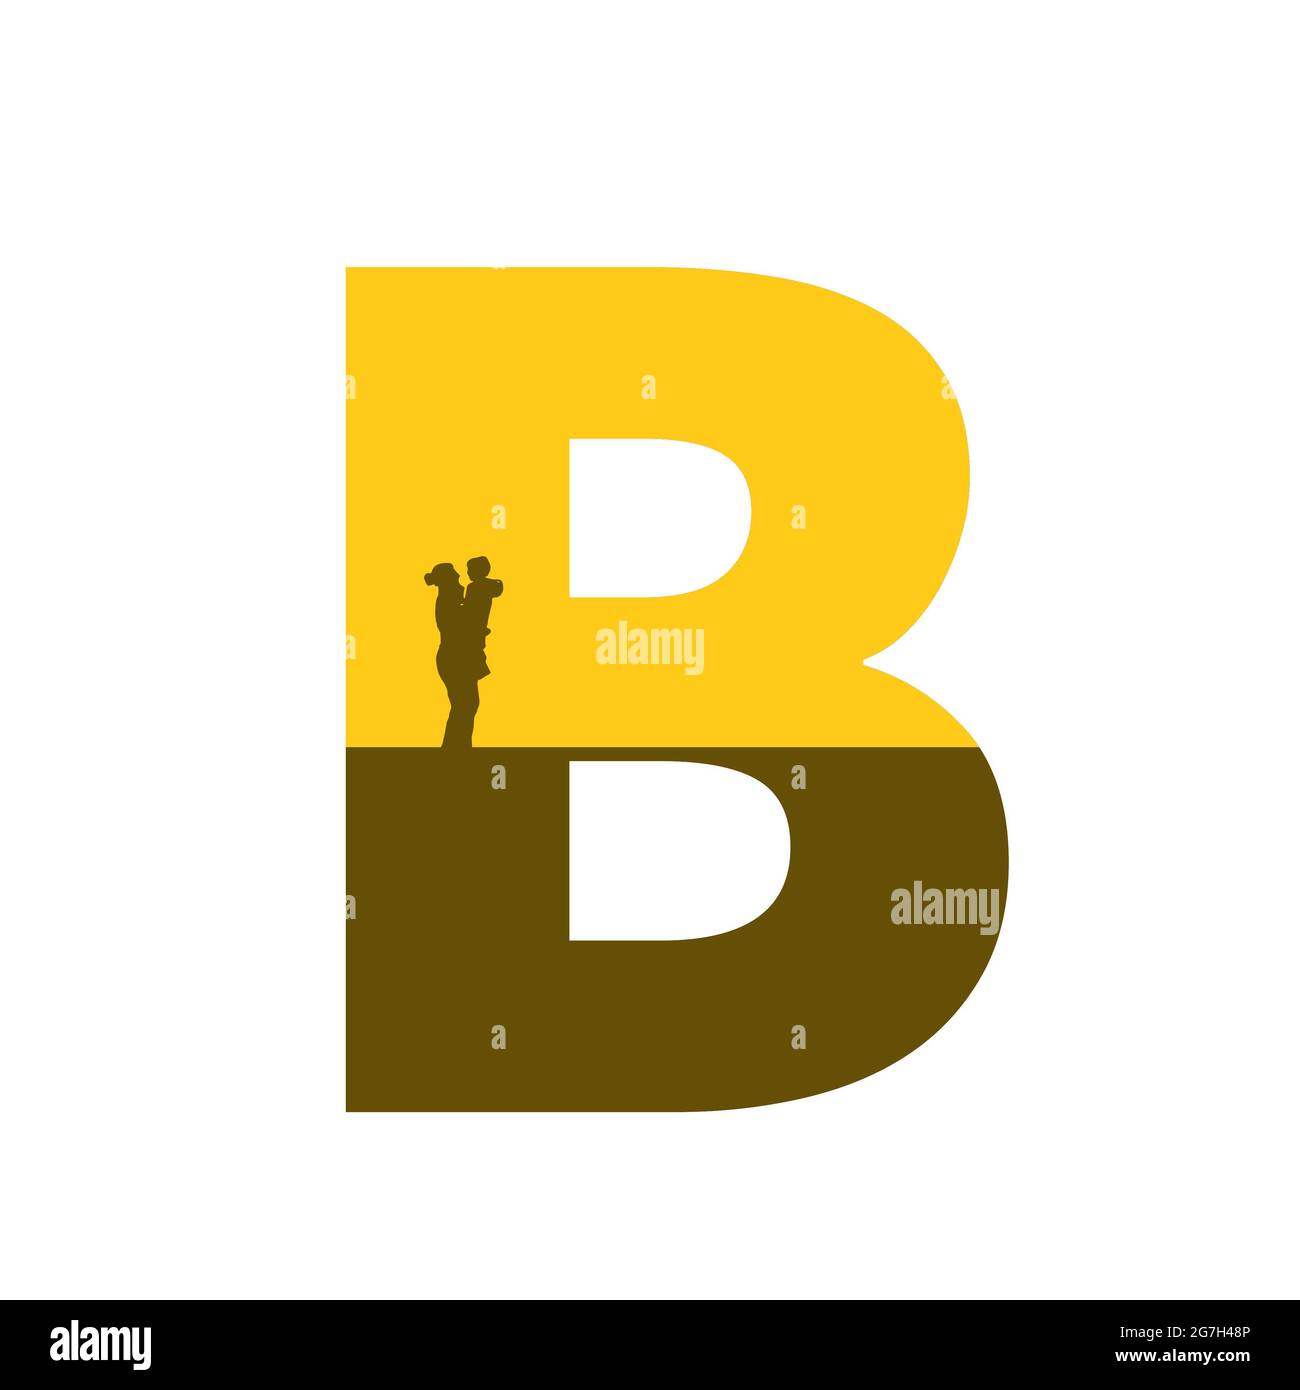 Lettre b de l'alphabet avec une silhouette de mère avec enfant sur le bras, de couleur ocre et marron, isolée sur fond blanc Banque D'Images